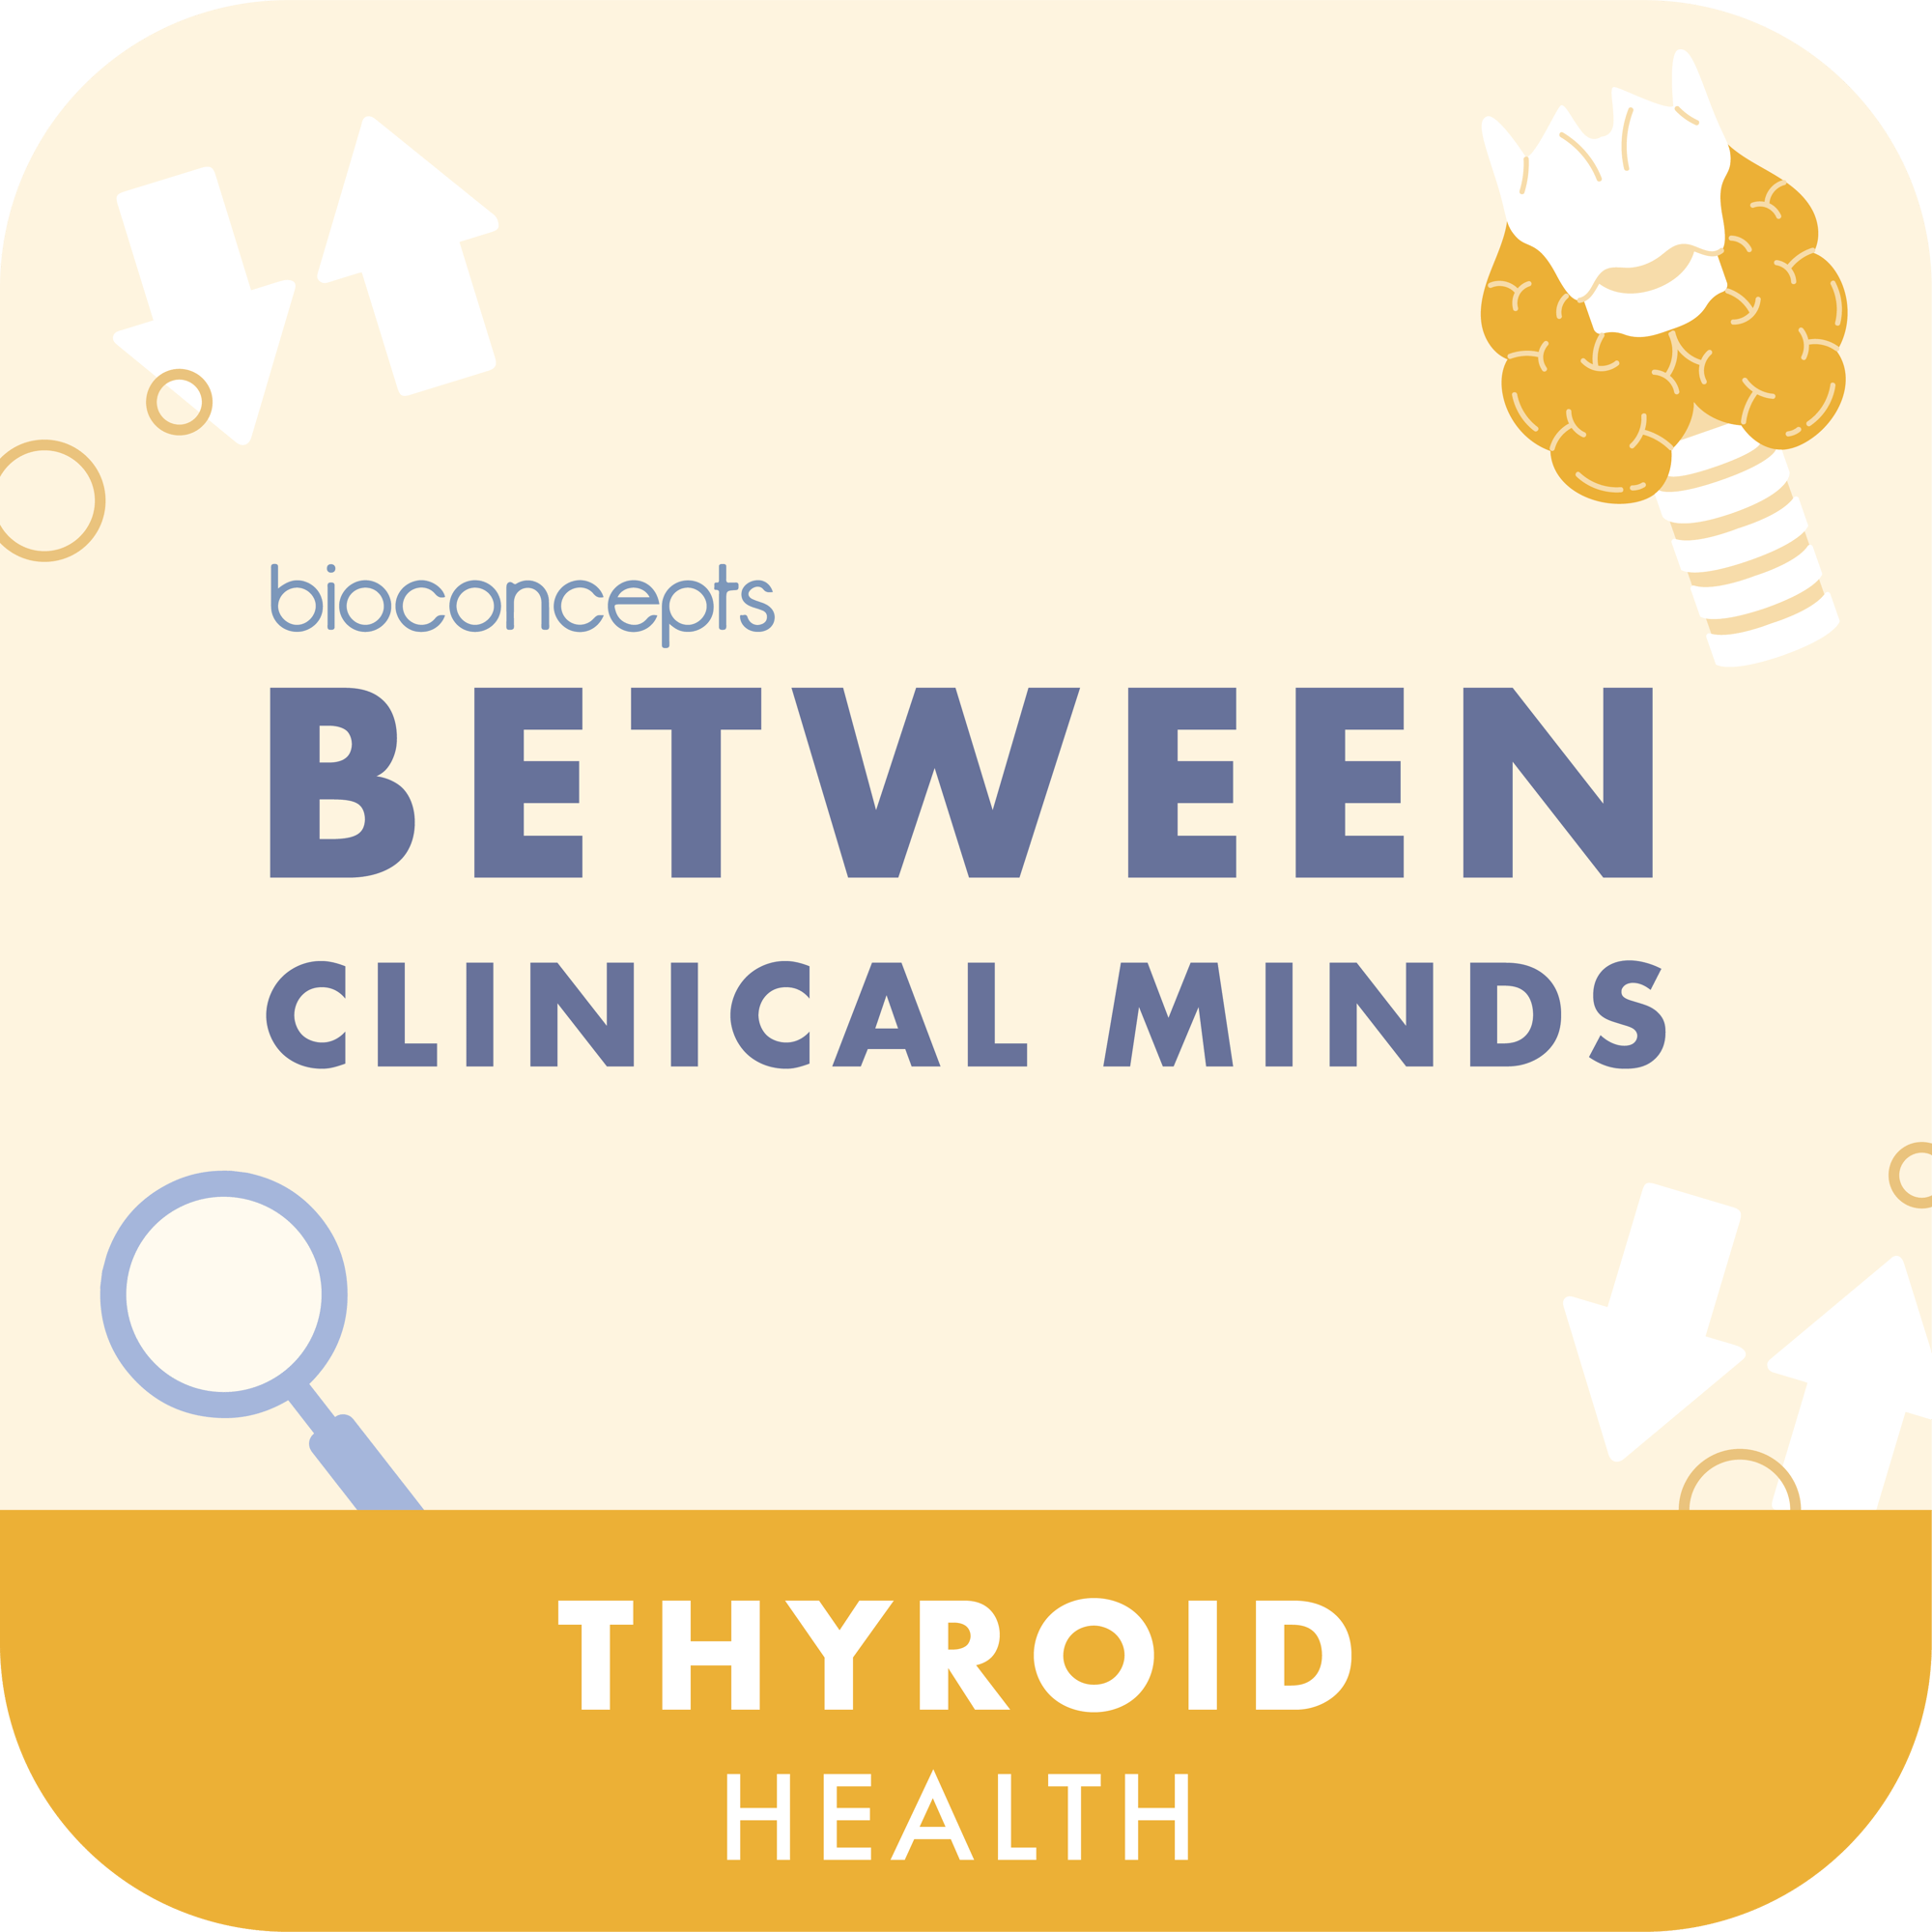 Thyroid health tile